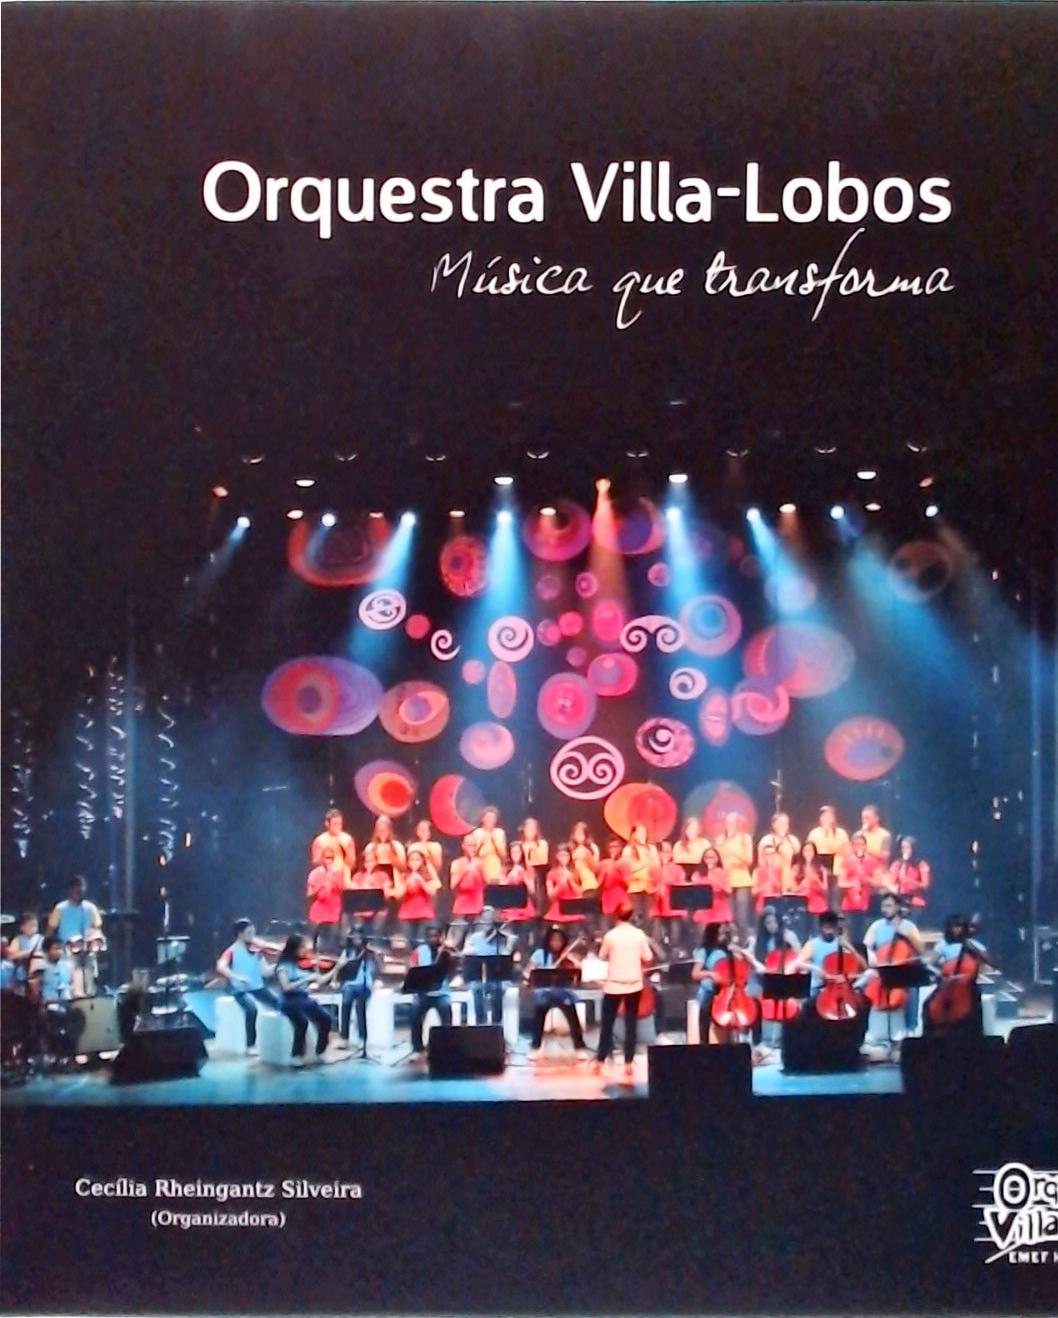 Orquestra Villa-Lobos